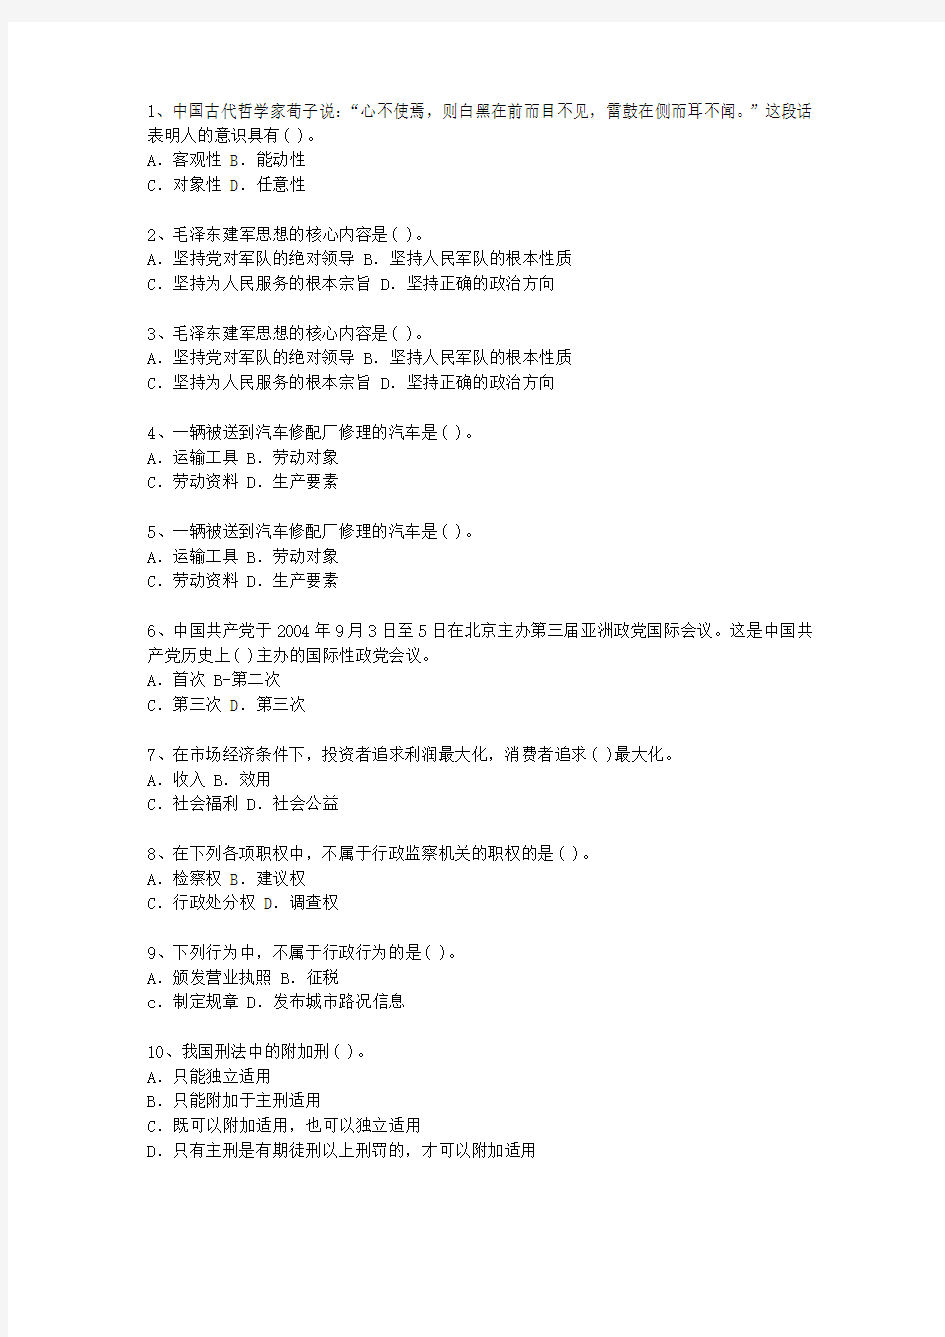 2011广东省最新公开选拔镇副科级领导干部(必备资料)